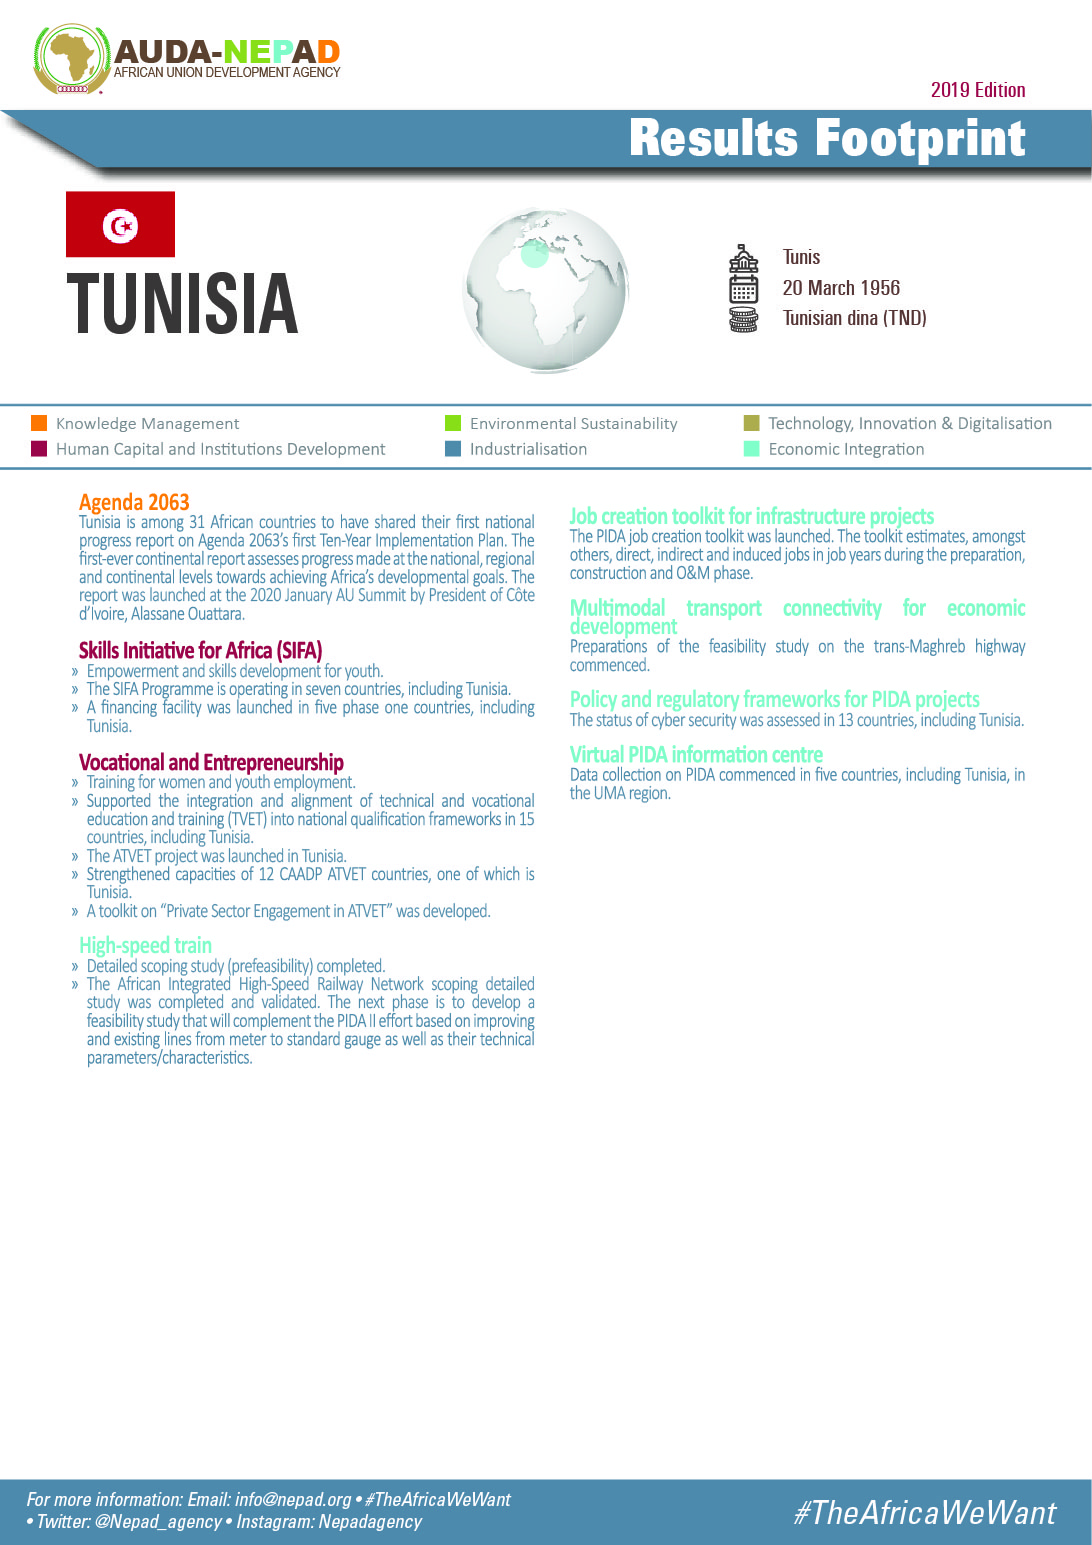 2019 AUDA-NEPAD Footprint: Country Profiles: Tunisia